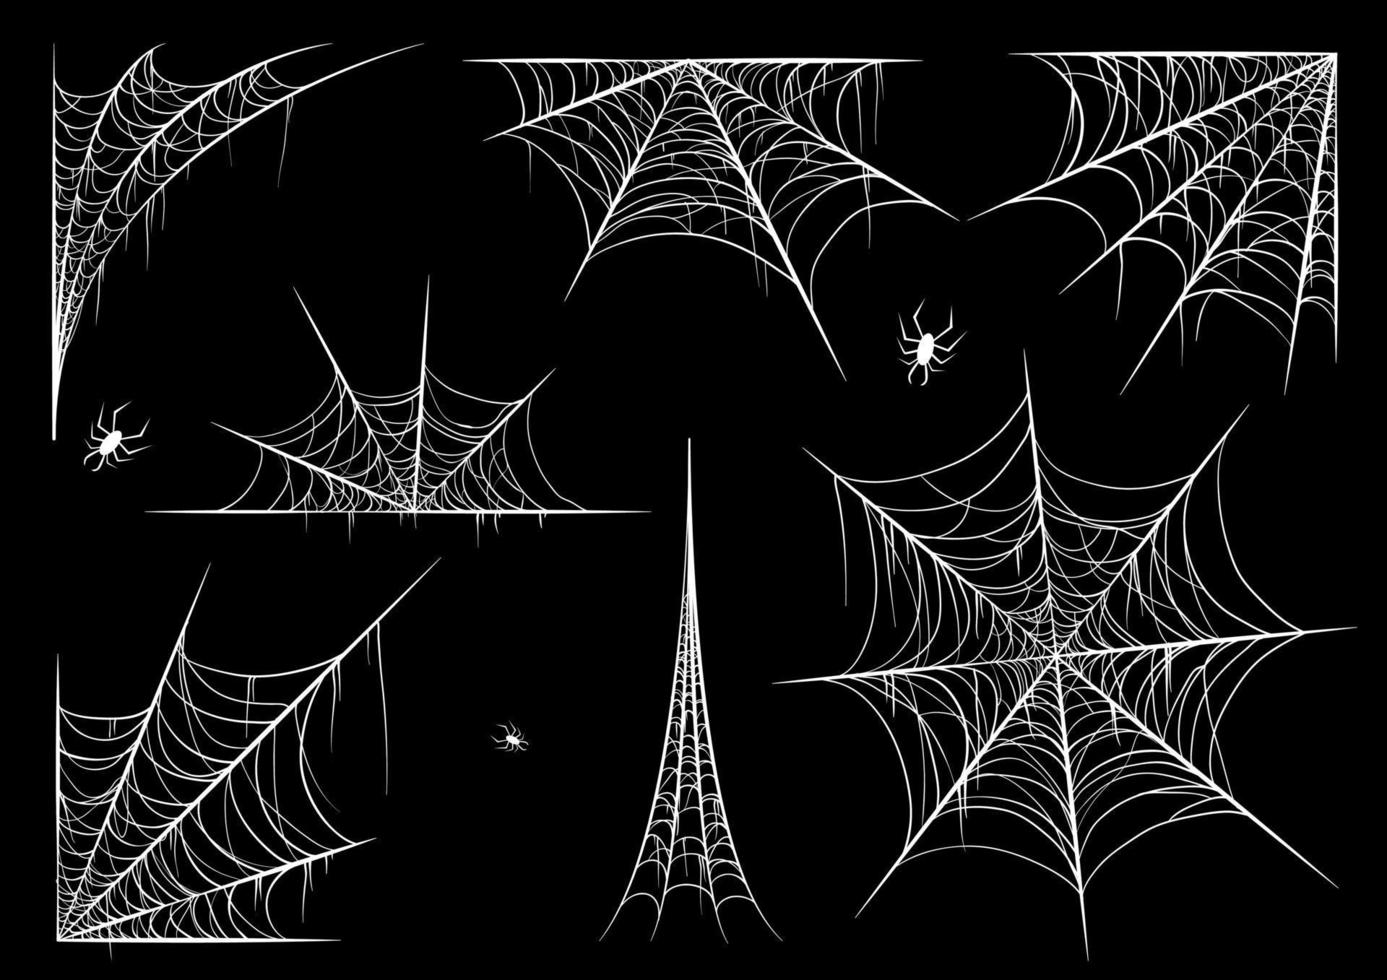 spinnenweb set, geïsoleerd op zwarte transparante achtergrond. spinnenweb voor halloween, spookachtig, eng, horror decor met spinnen. vector